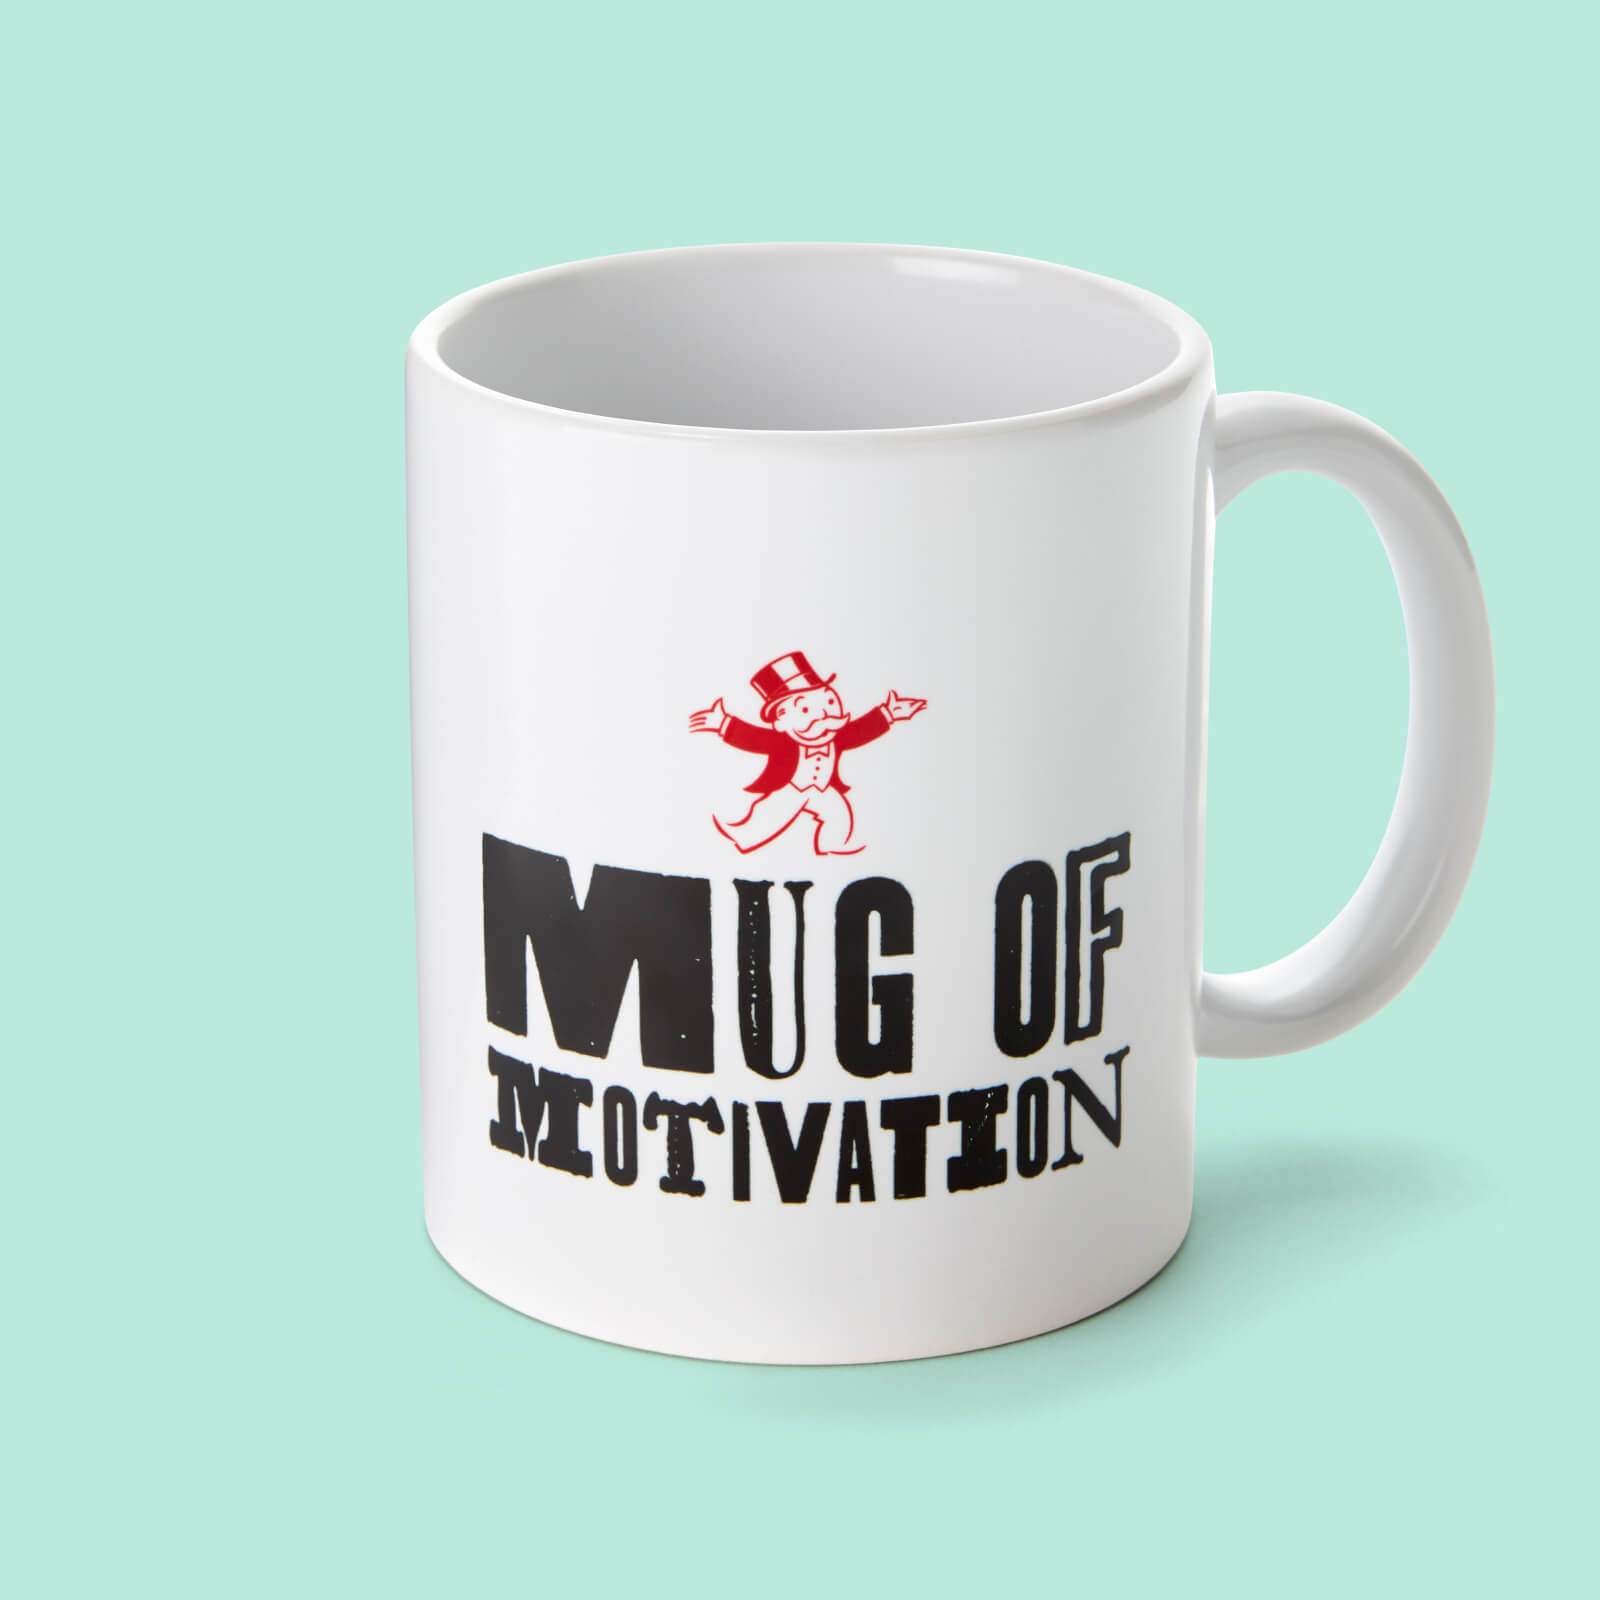 Monopoly Mug Of Motivation Mug